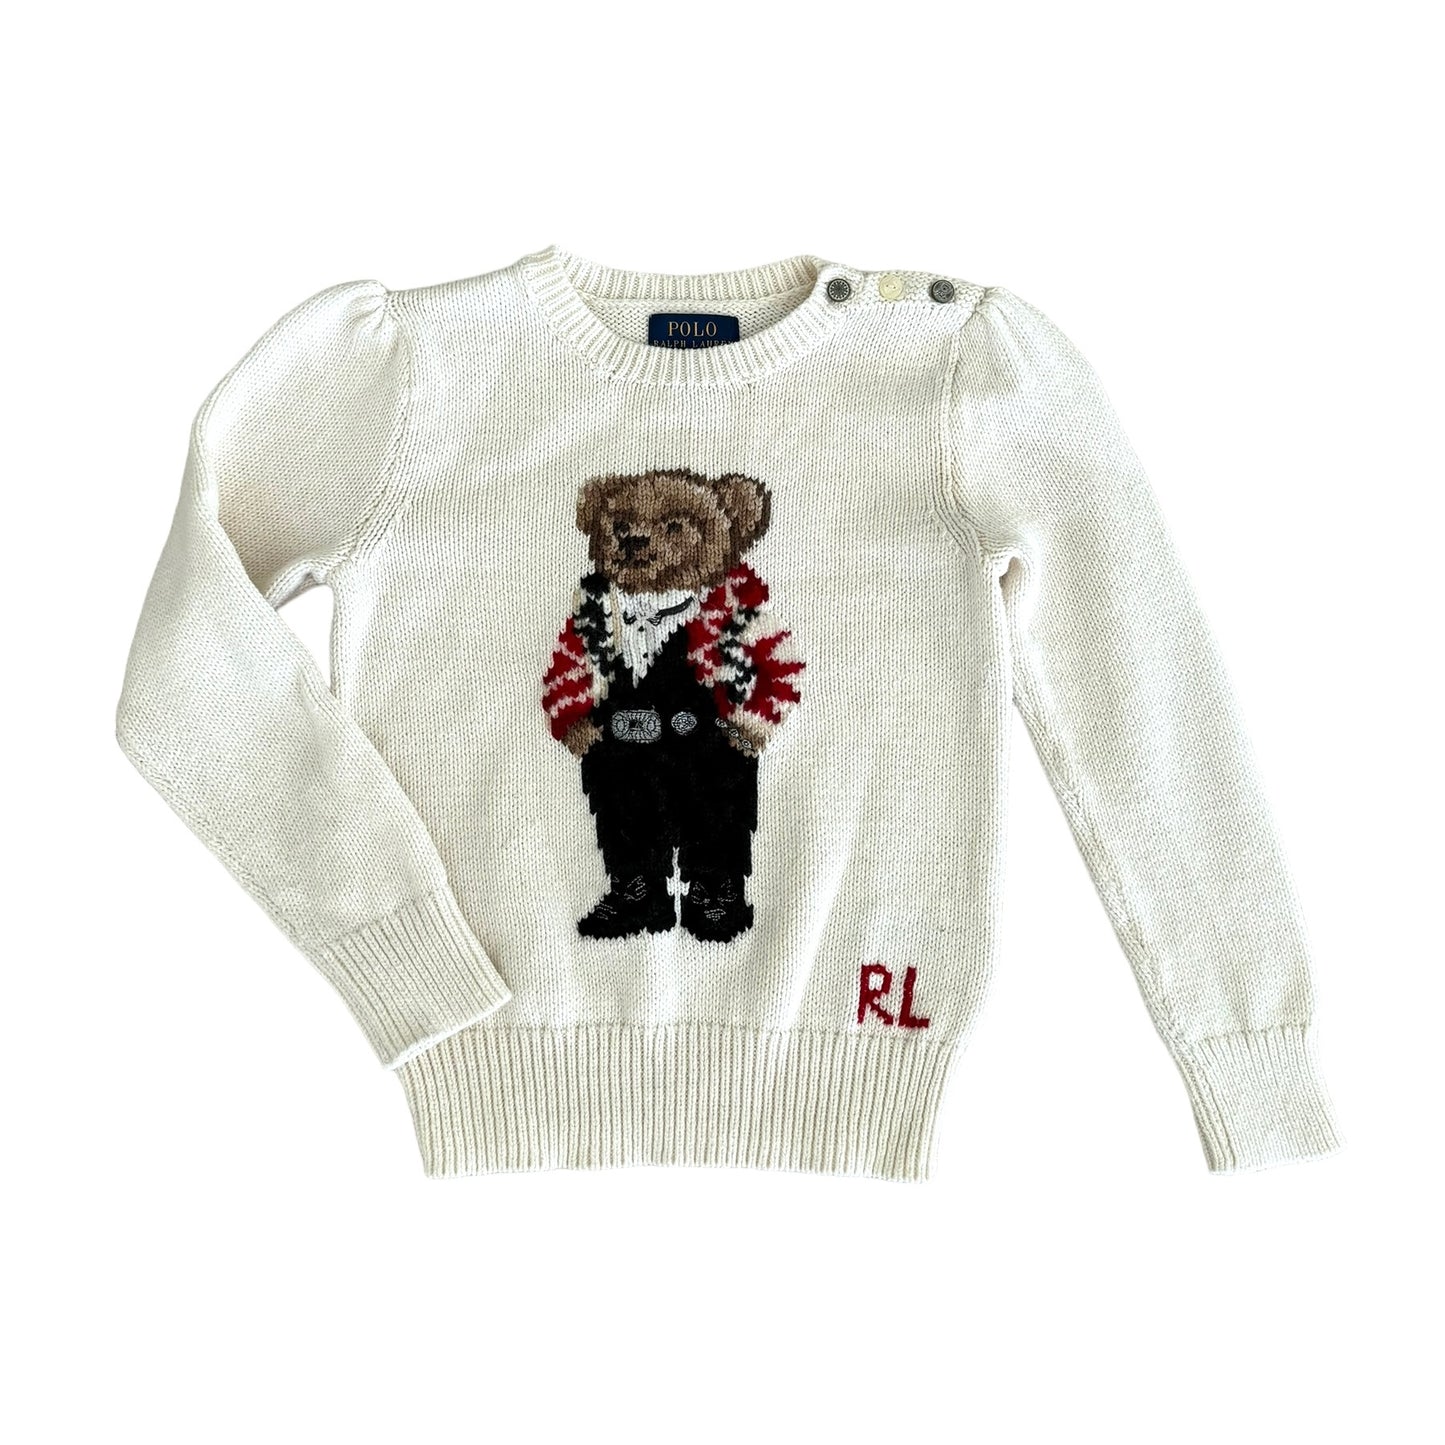 Ralph Lauren Polo Bear Girls Sweater Size 5